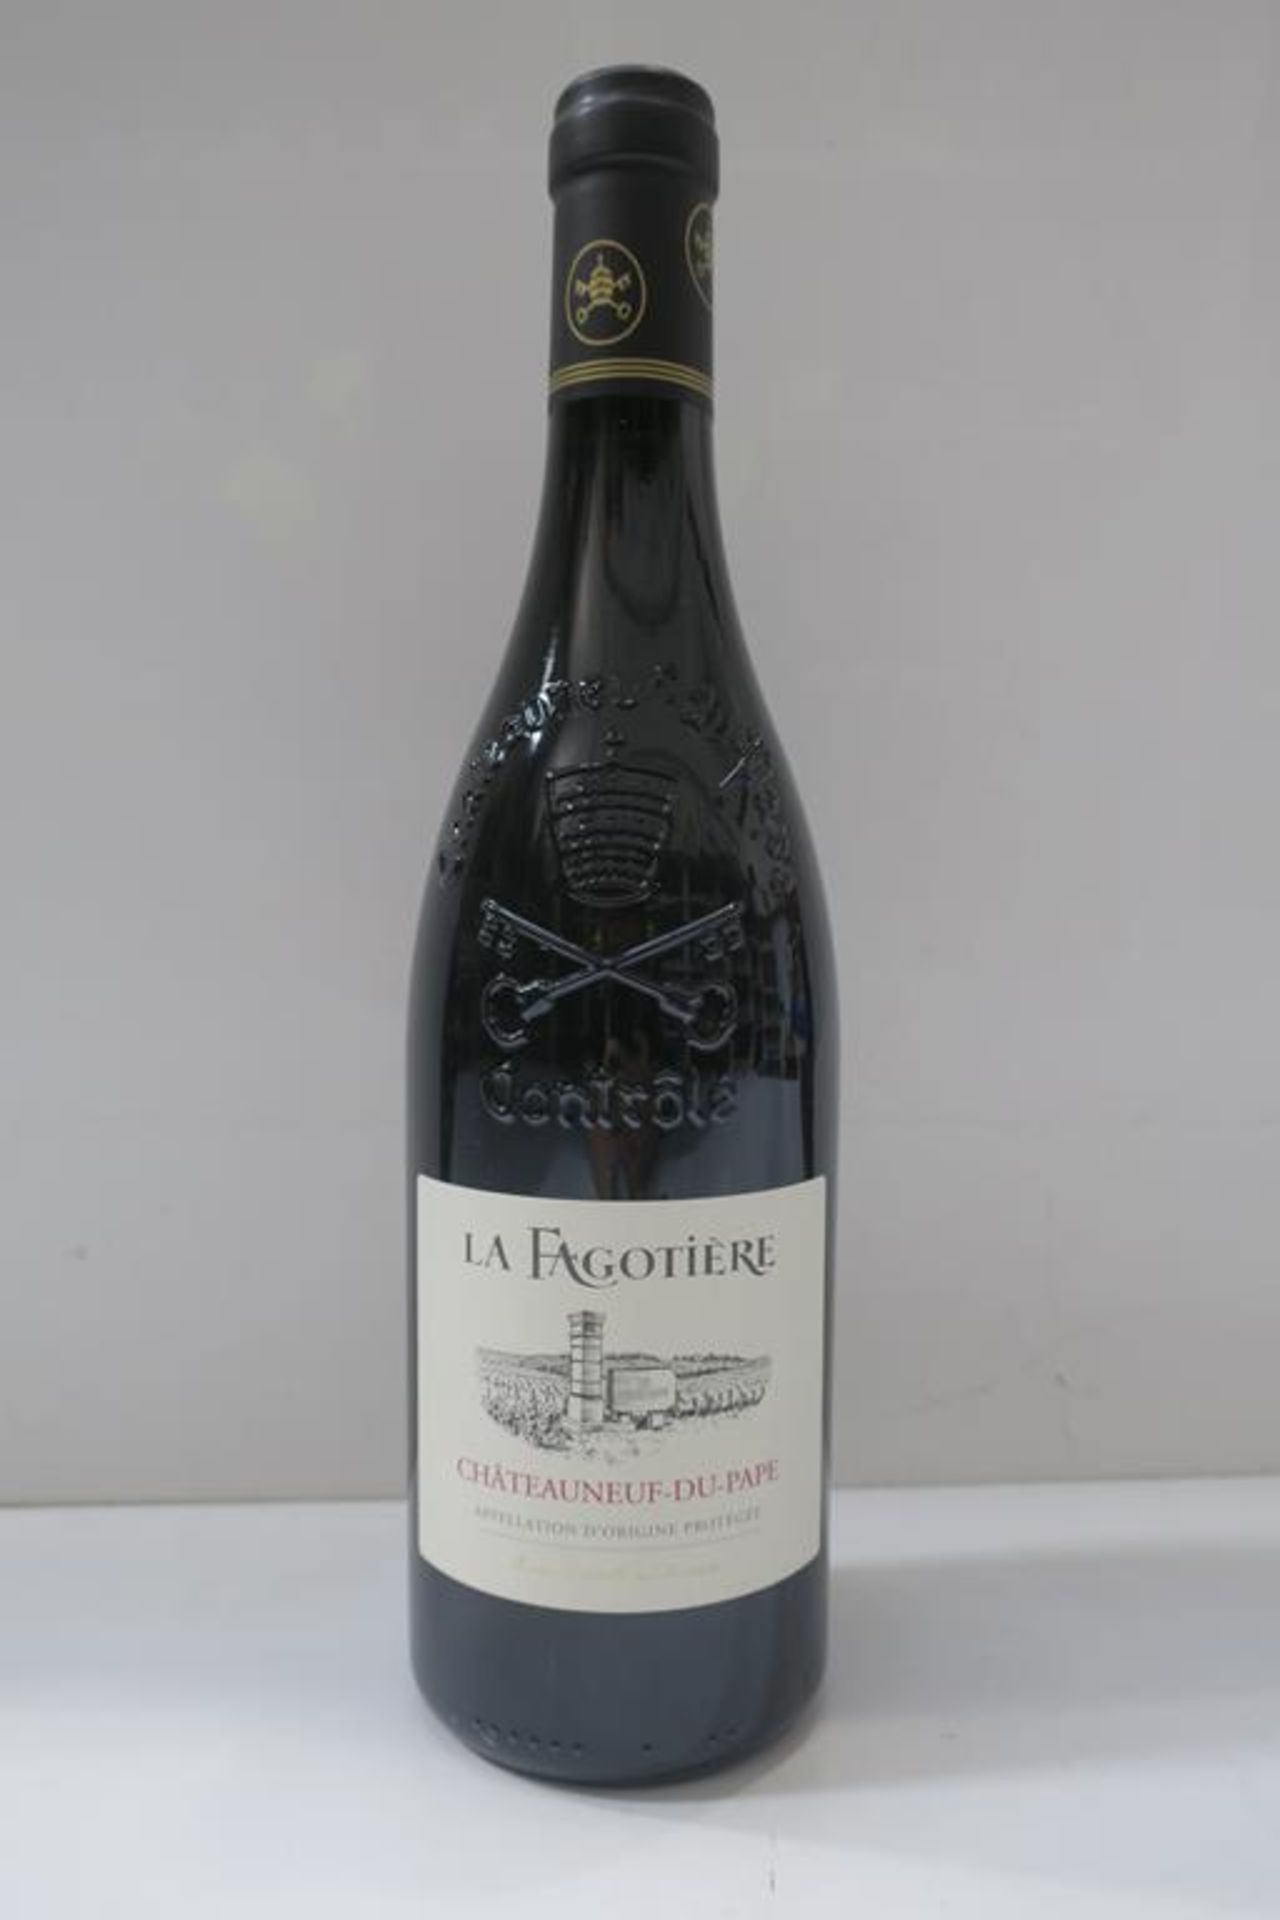 12 X Bottles of La Fagotiere 2015 Red Wine